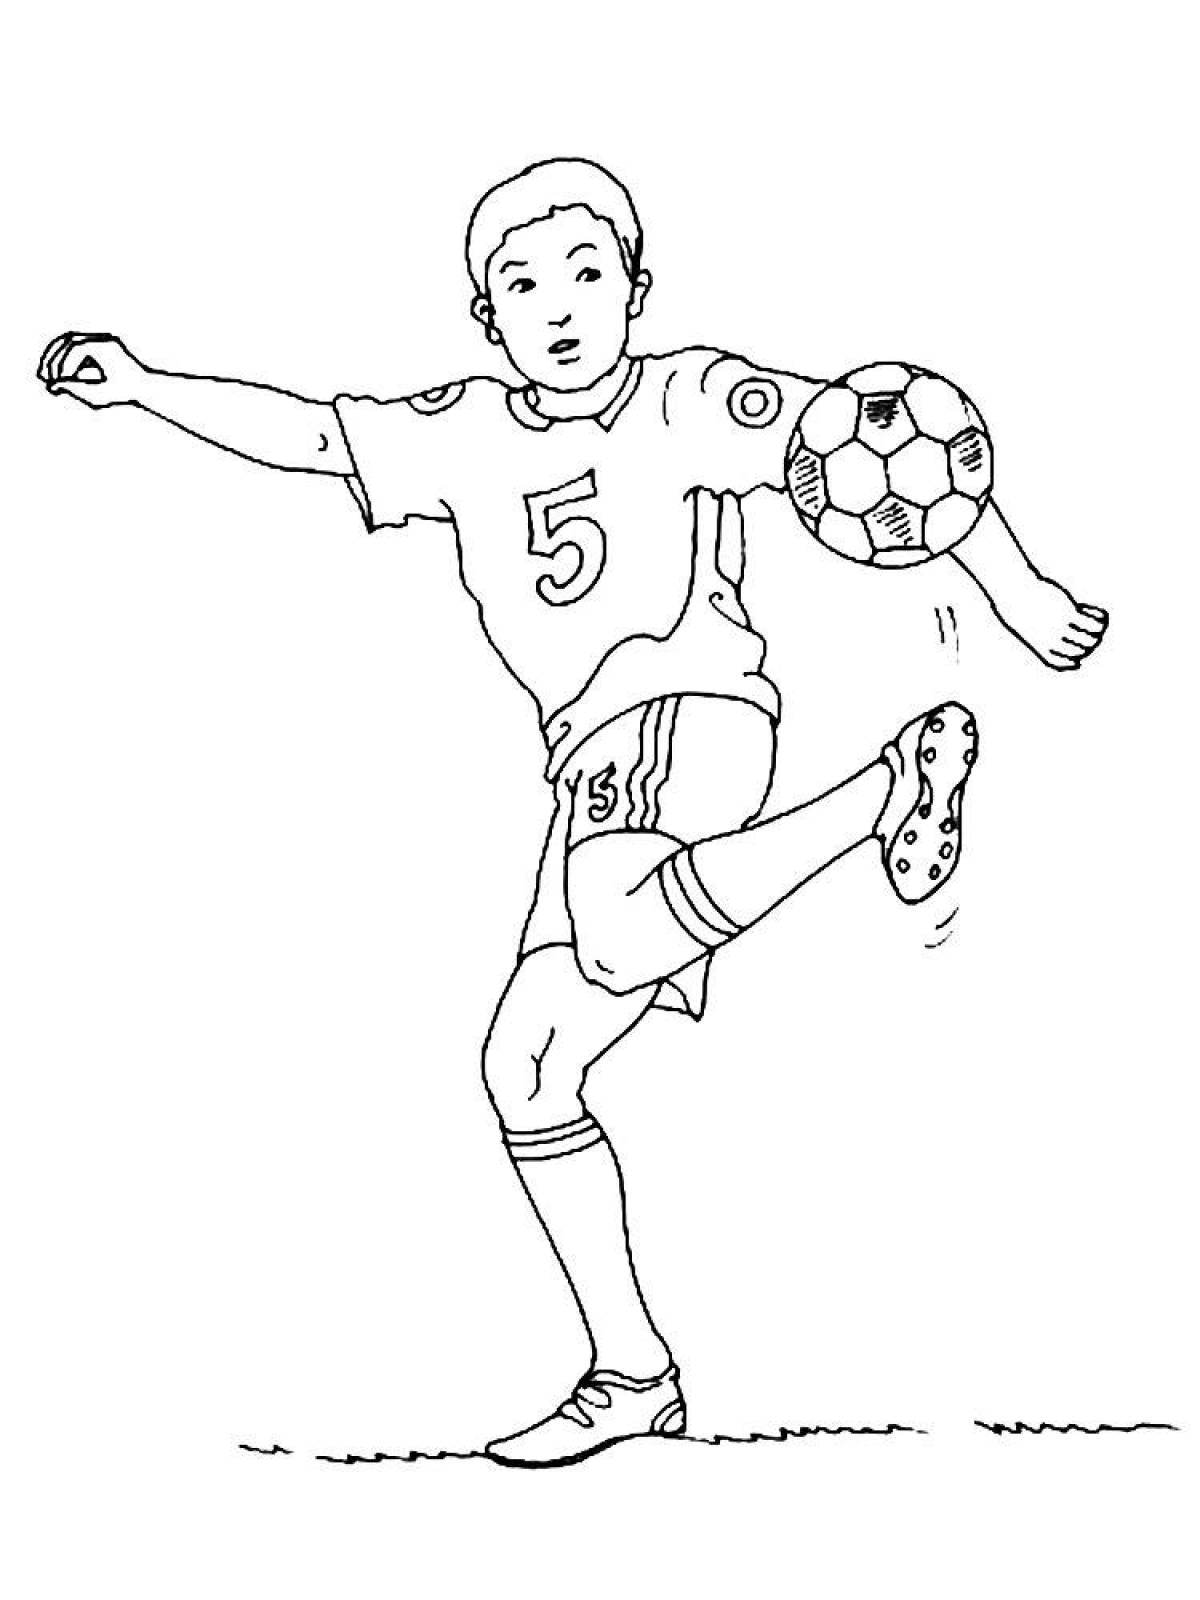 Футболист рисунок для разукрашивания